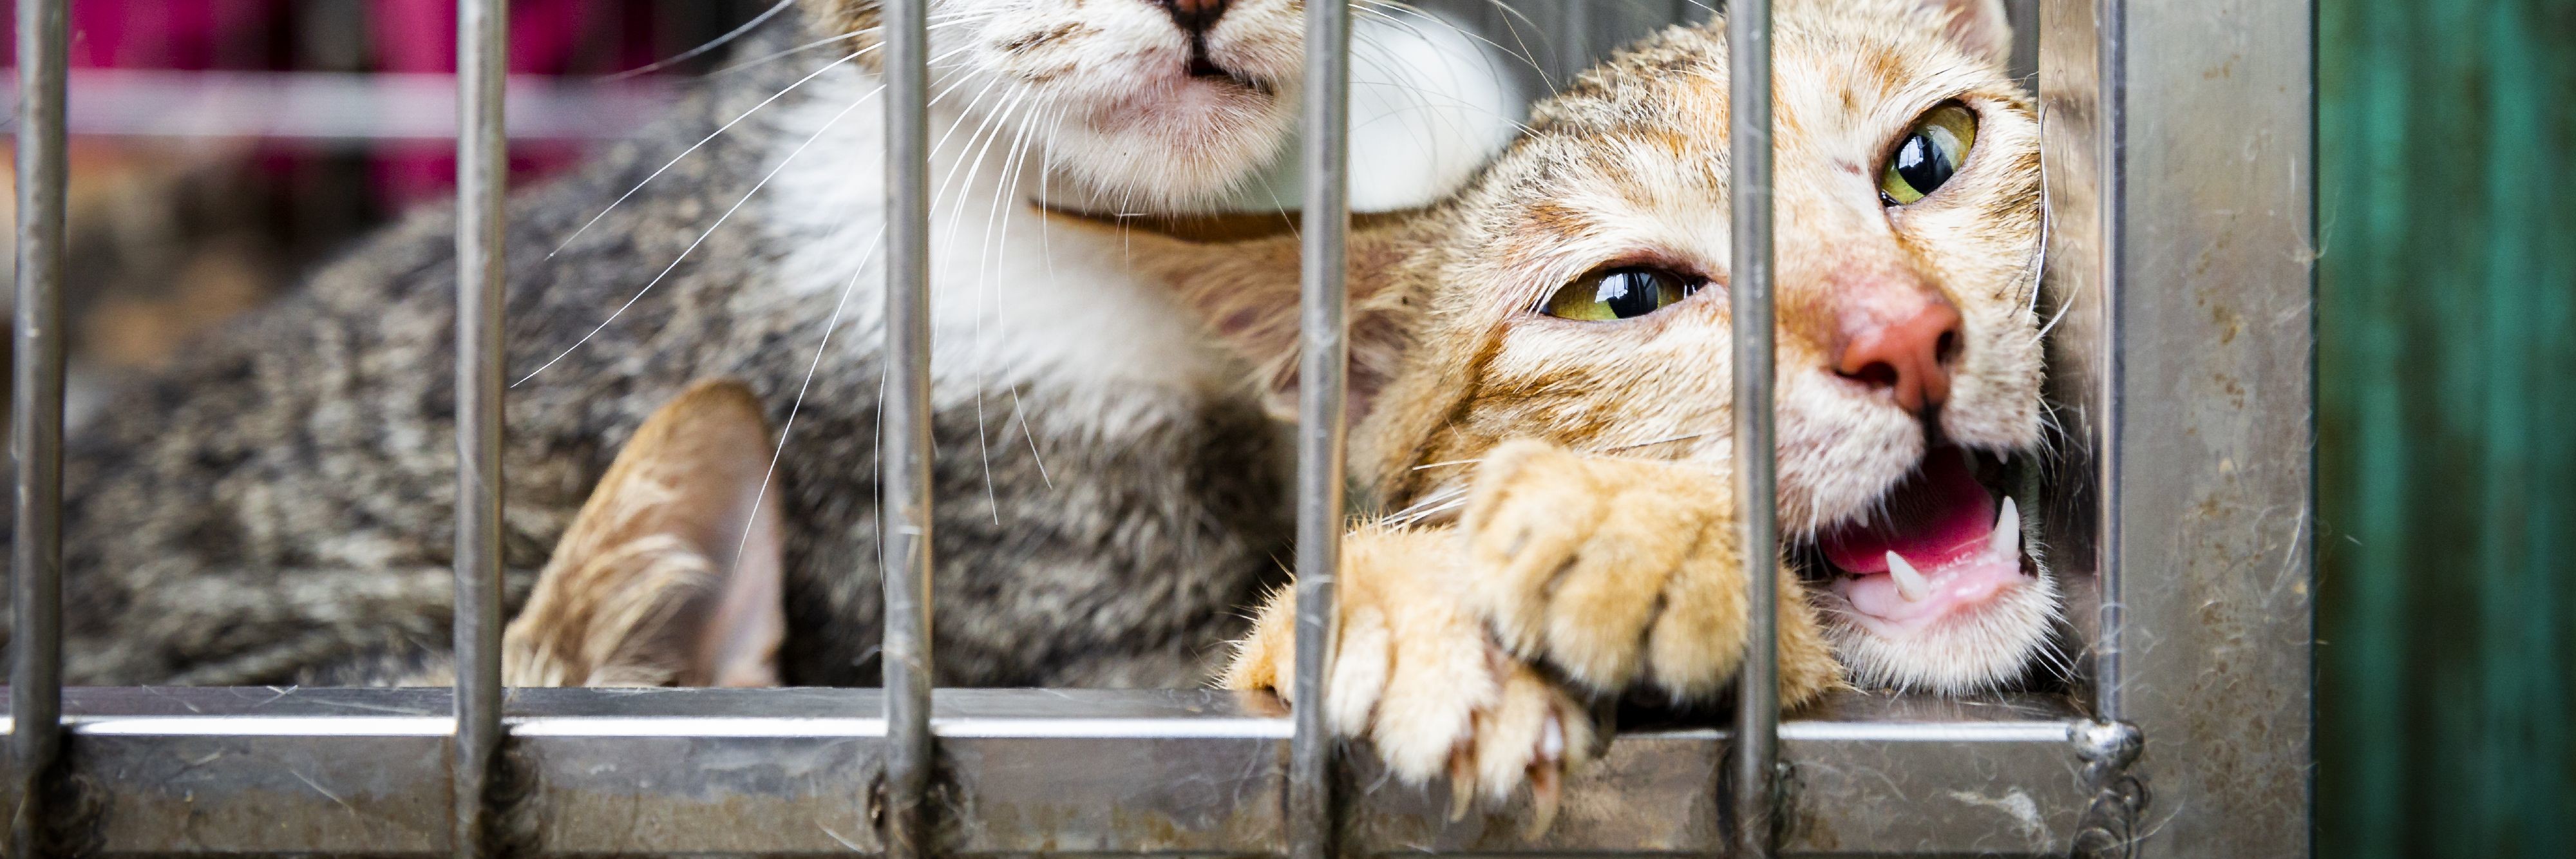 Hunde Katzen Fleischhandel Hunde Und Katzenfleischhandel Sudostasien Protectmillions Eine Kampagne Von Vier Pfoten